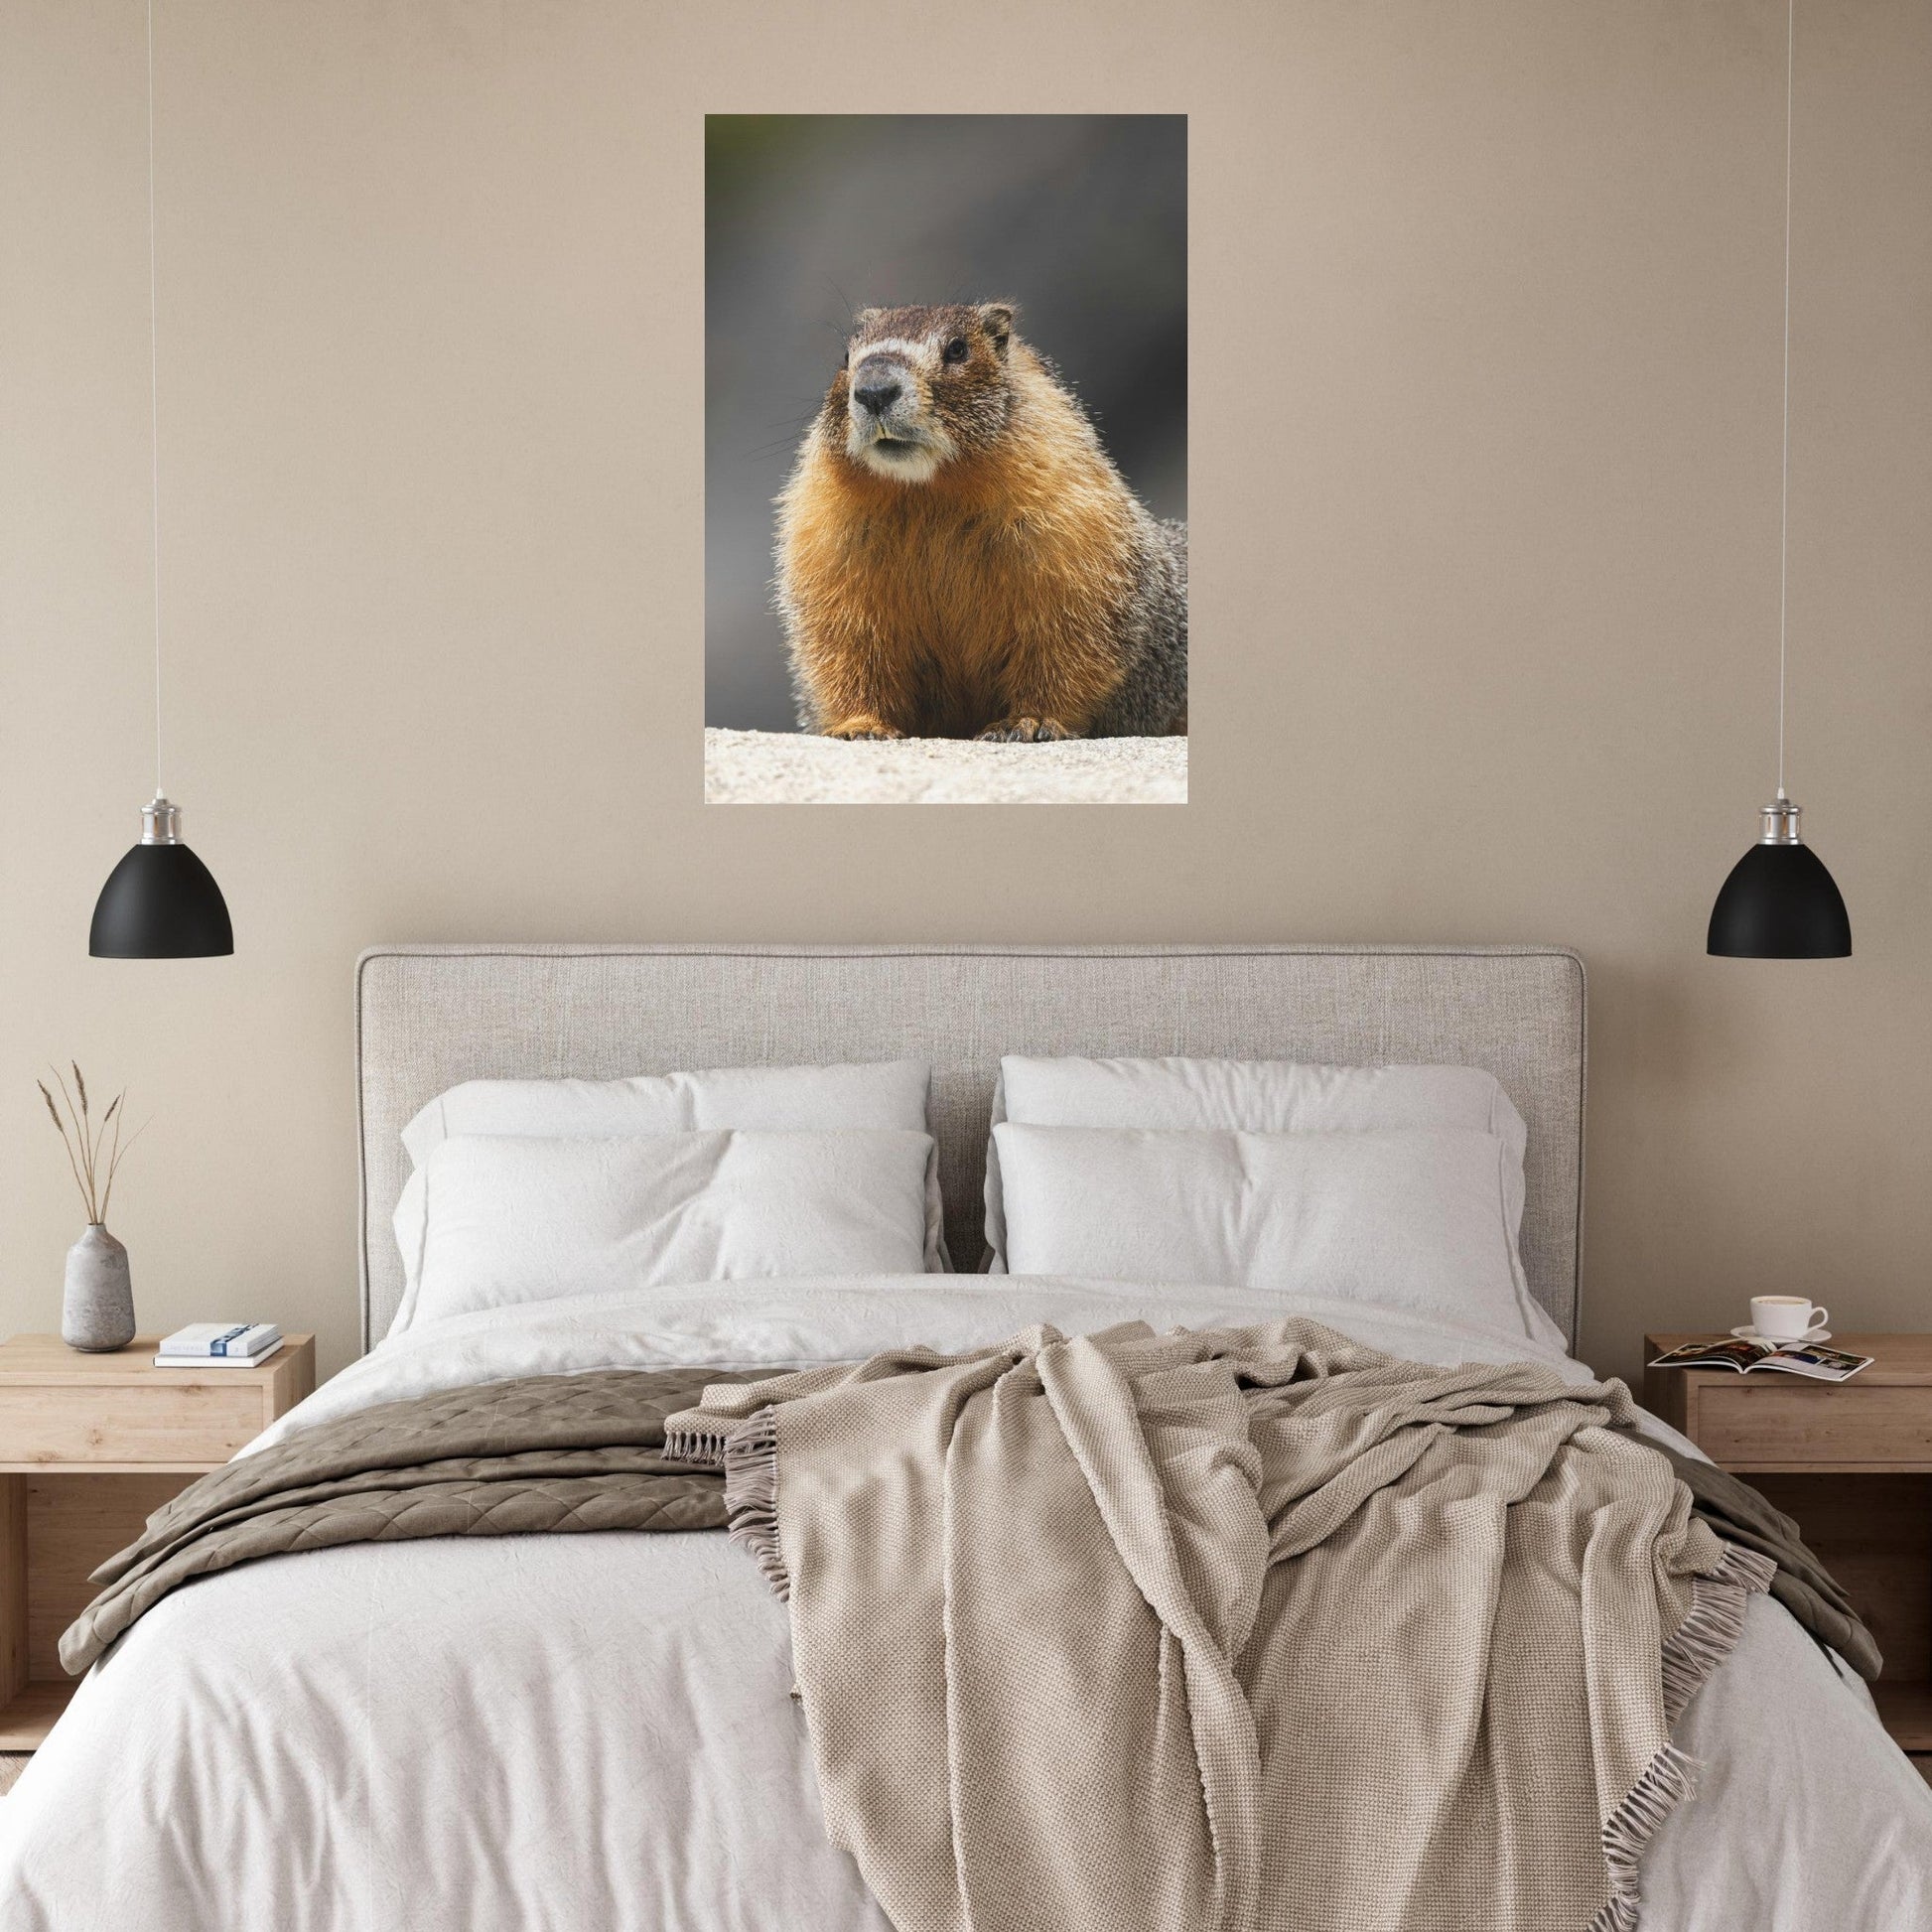 Vente Photo d'une marmotte dans les Alpes #7 - Tableau photo paysage